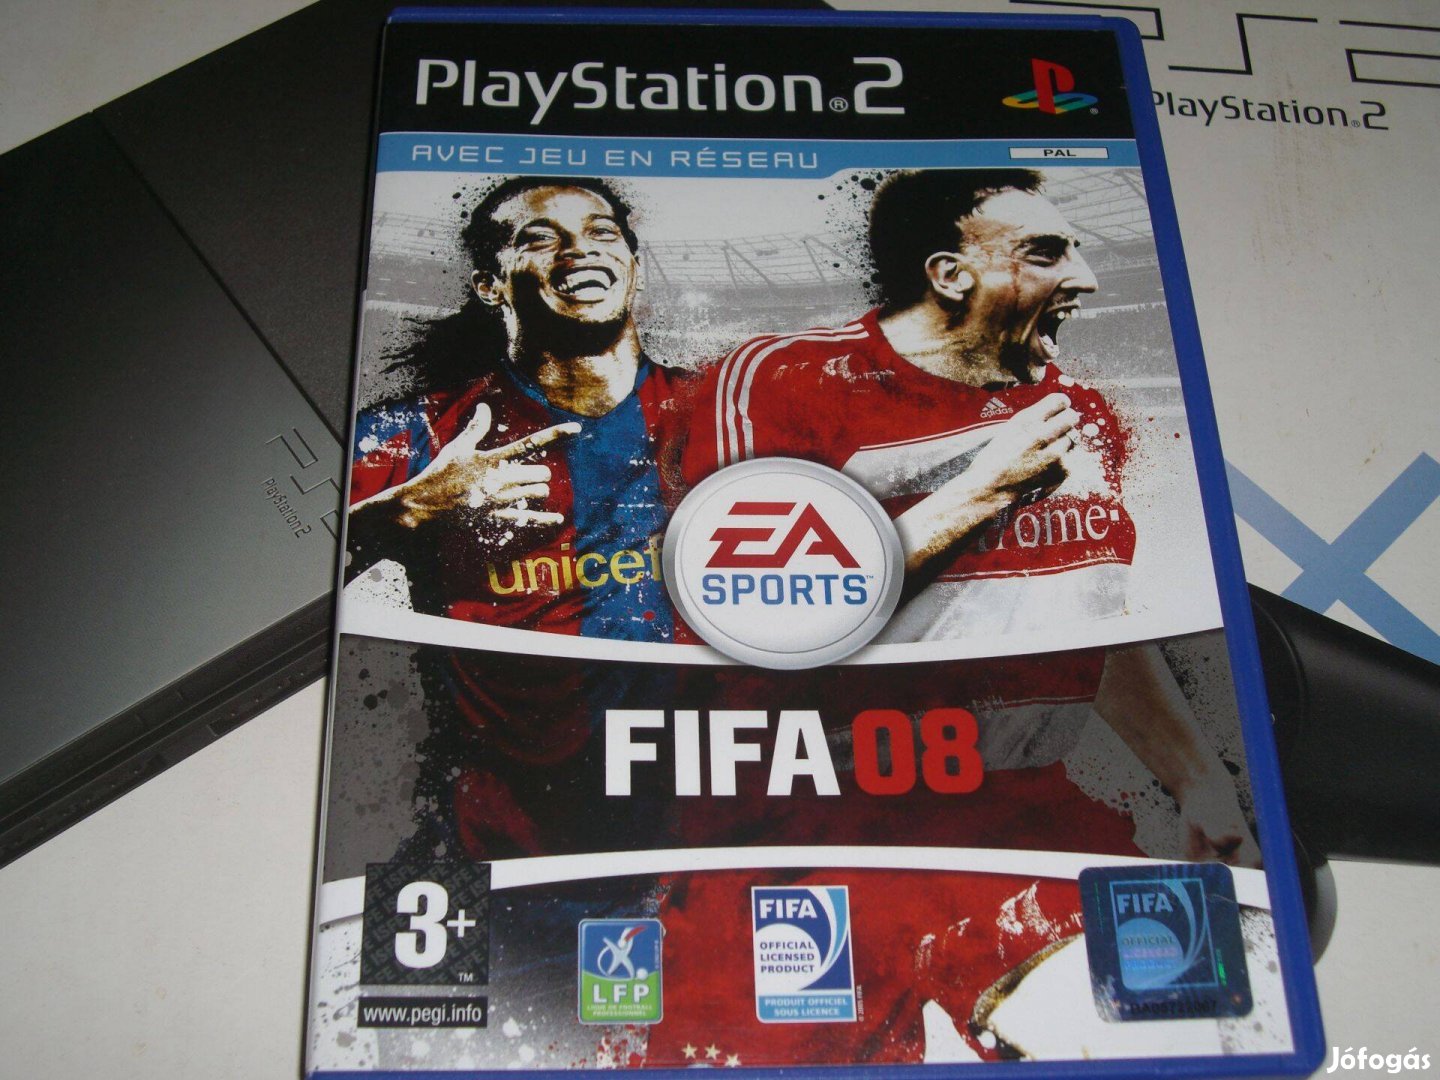 Fifa 08 - Playstation 2 eredeti lemez eladó